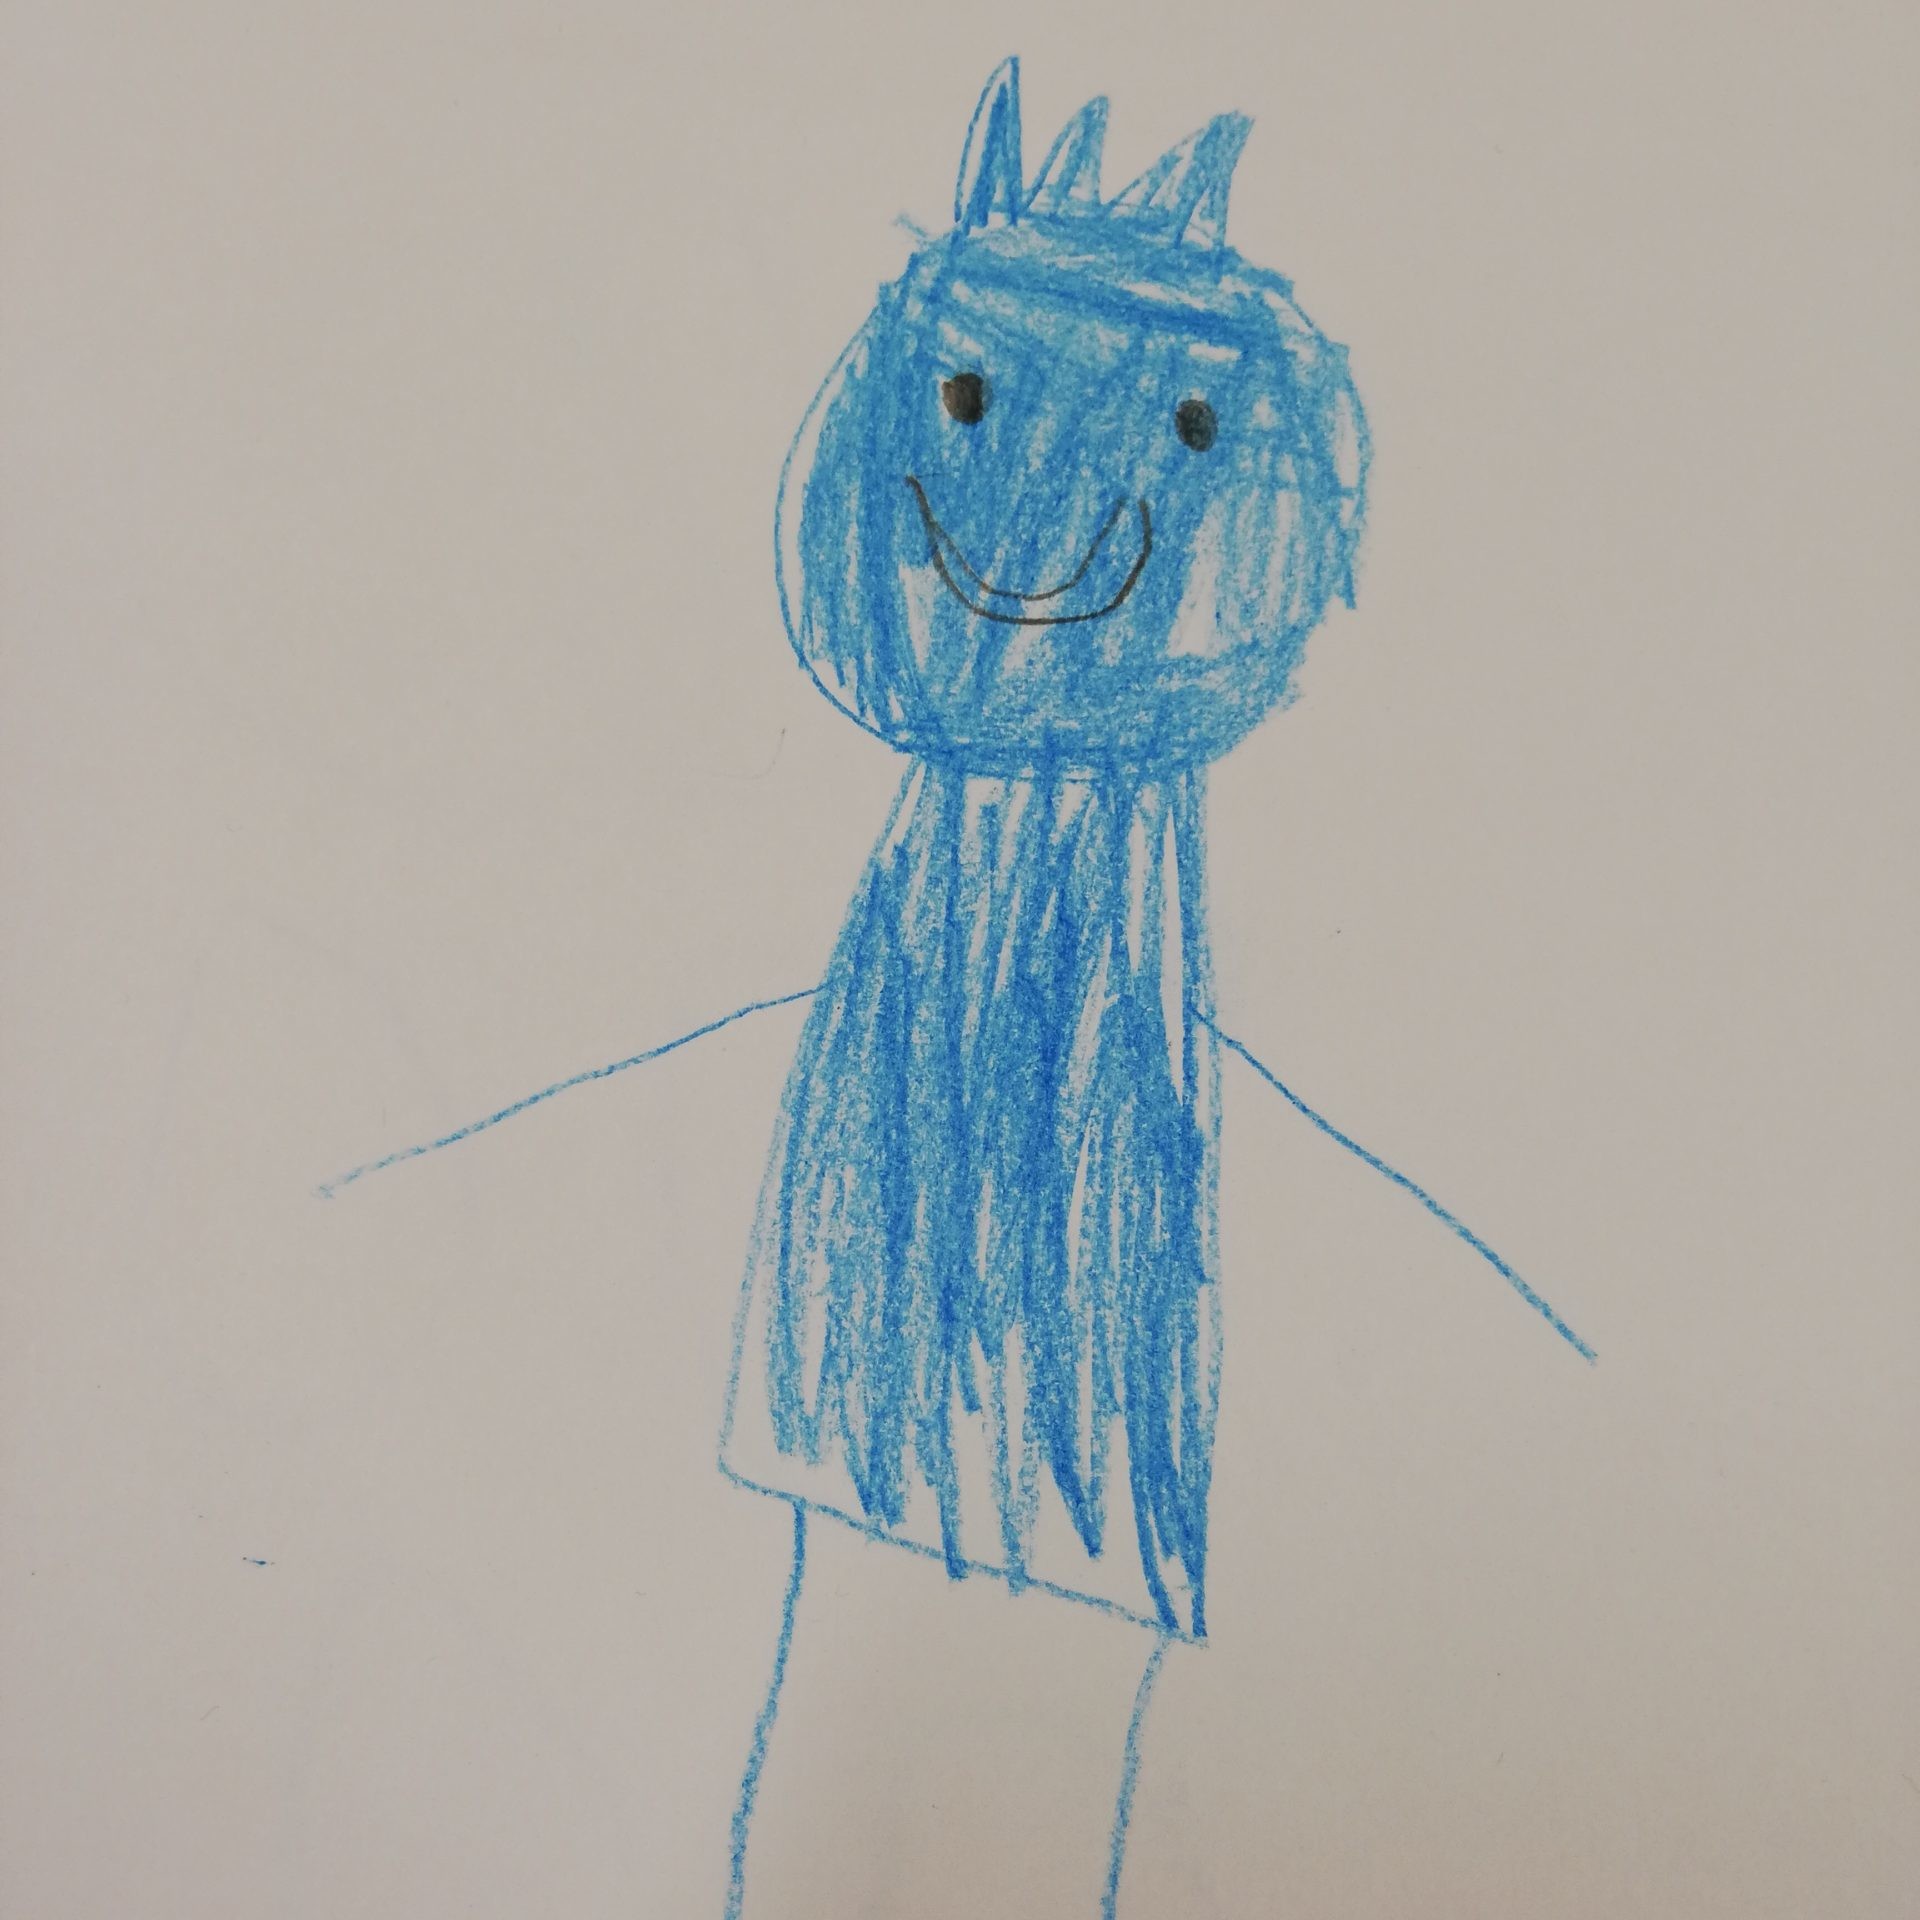 Lapsen piirtämä sininen, kruunupäinen hahmo.